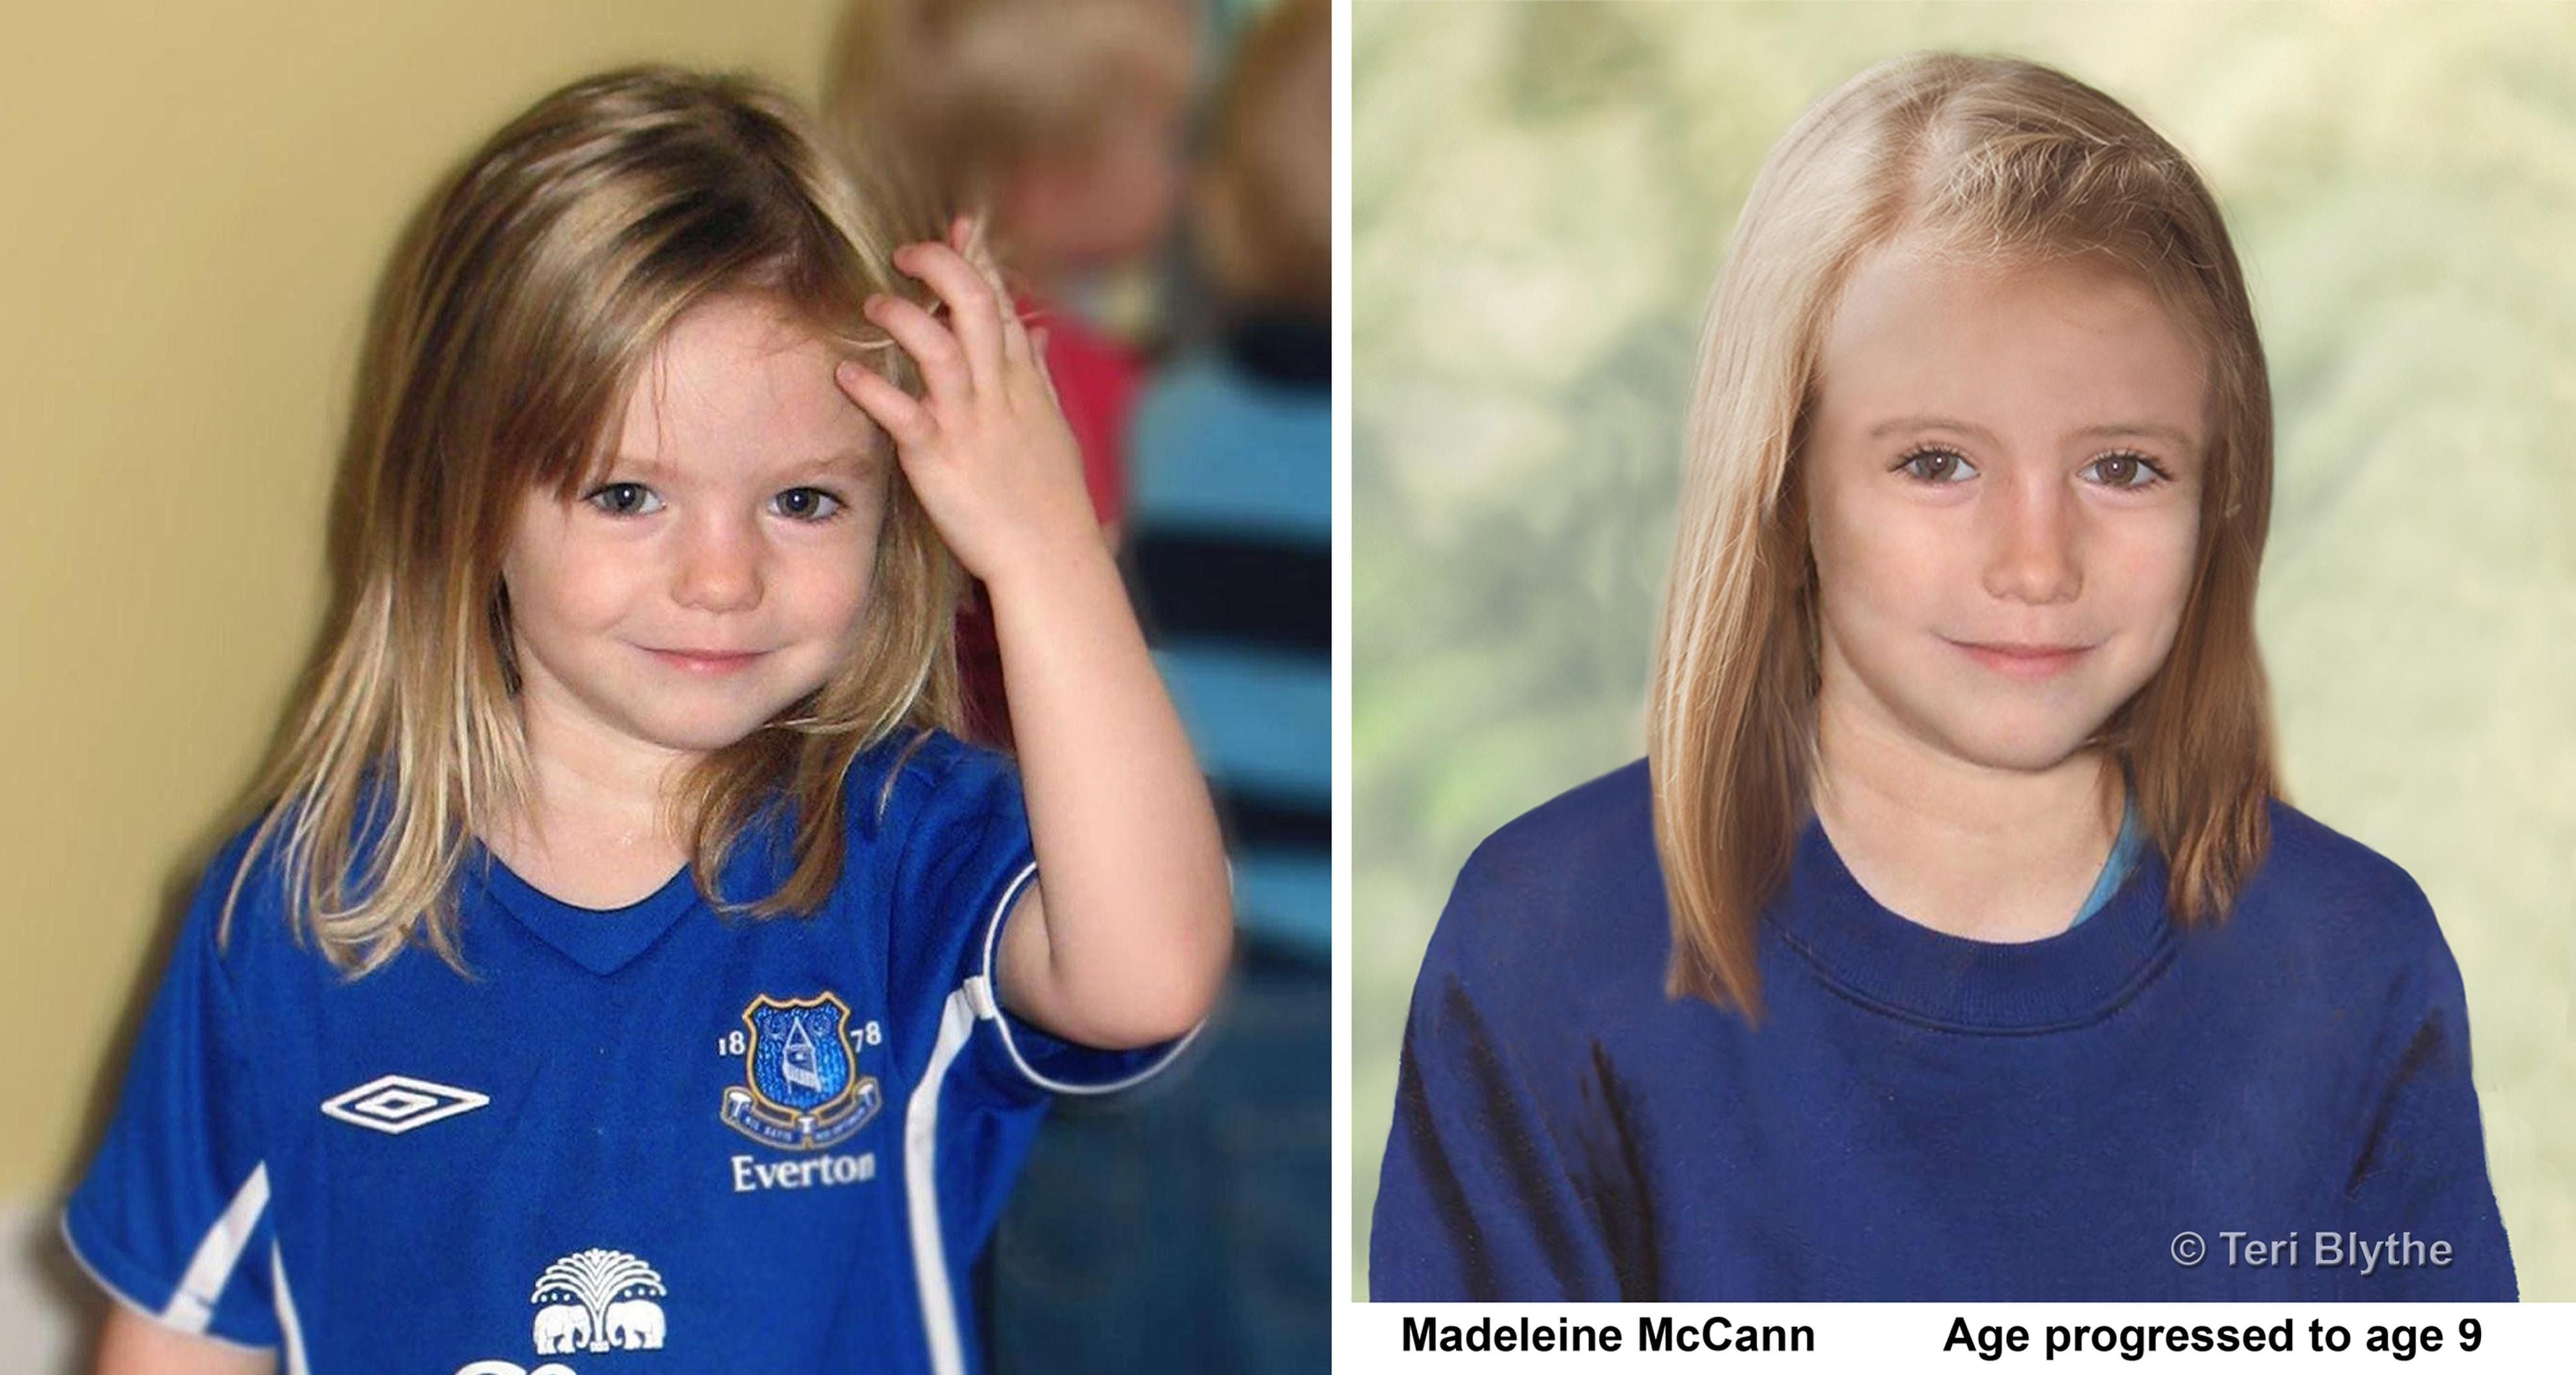 La niña inglesa Madeleine McCann desapareció mientras vacacionaba junto a su familia  en Portugal. (AP Photo/Metropolitan Police/Teri Blythe)